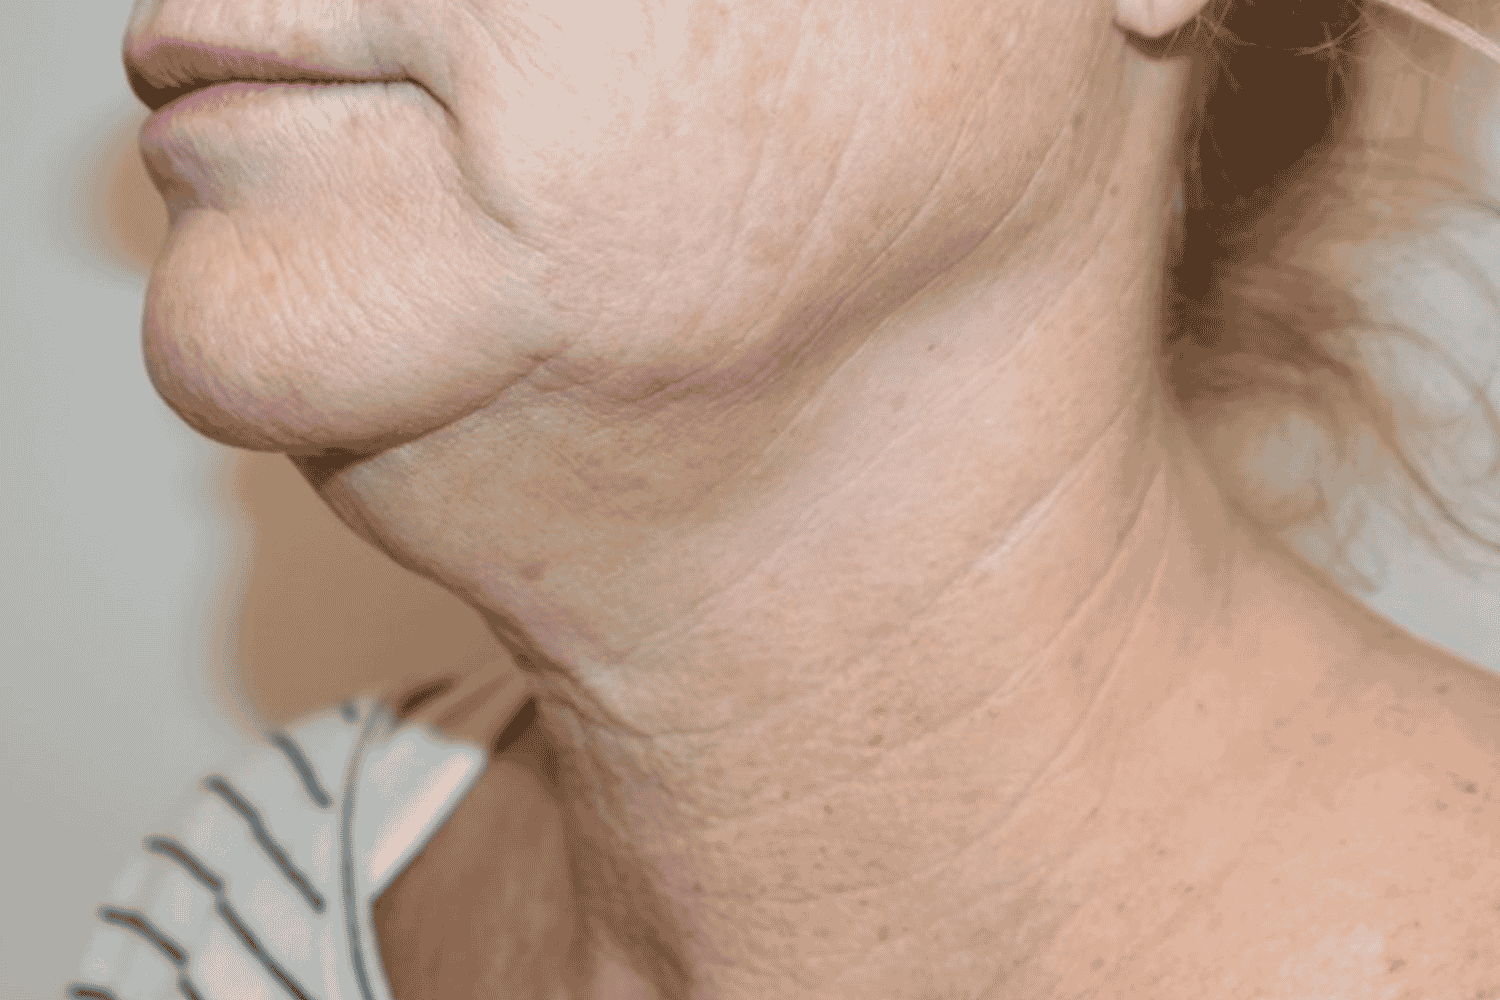 Close neck shot before LaseMD & Genius RF procedure at Regeneris